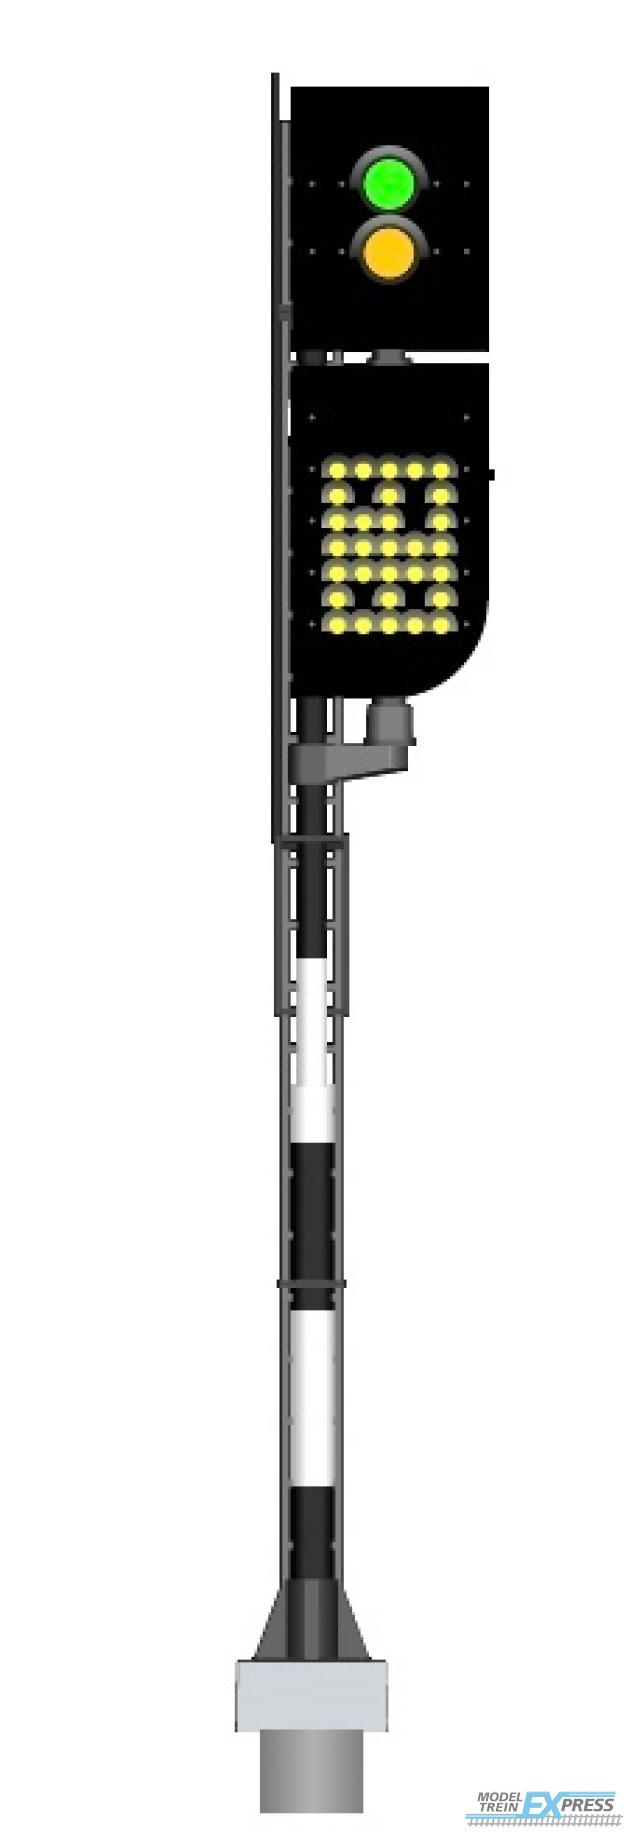 Mafen 913714 NS - Vorsignal mit Geschwindigkeitsanzeiger (Grün/Gelb) - rechts